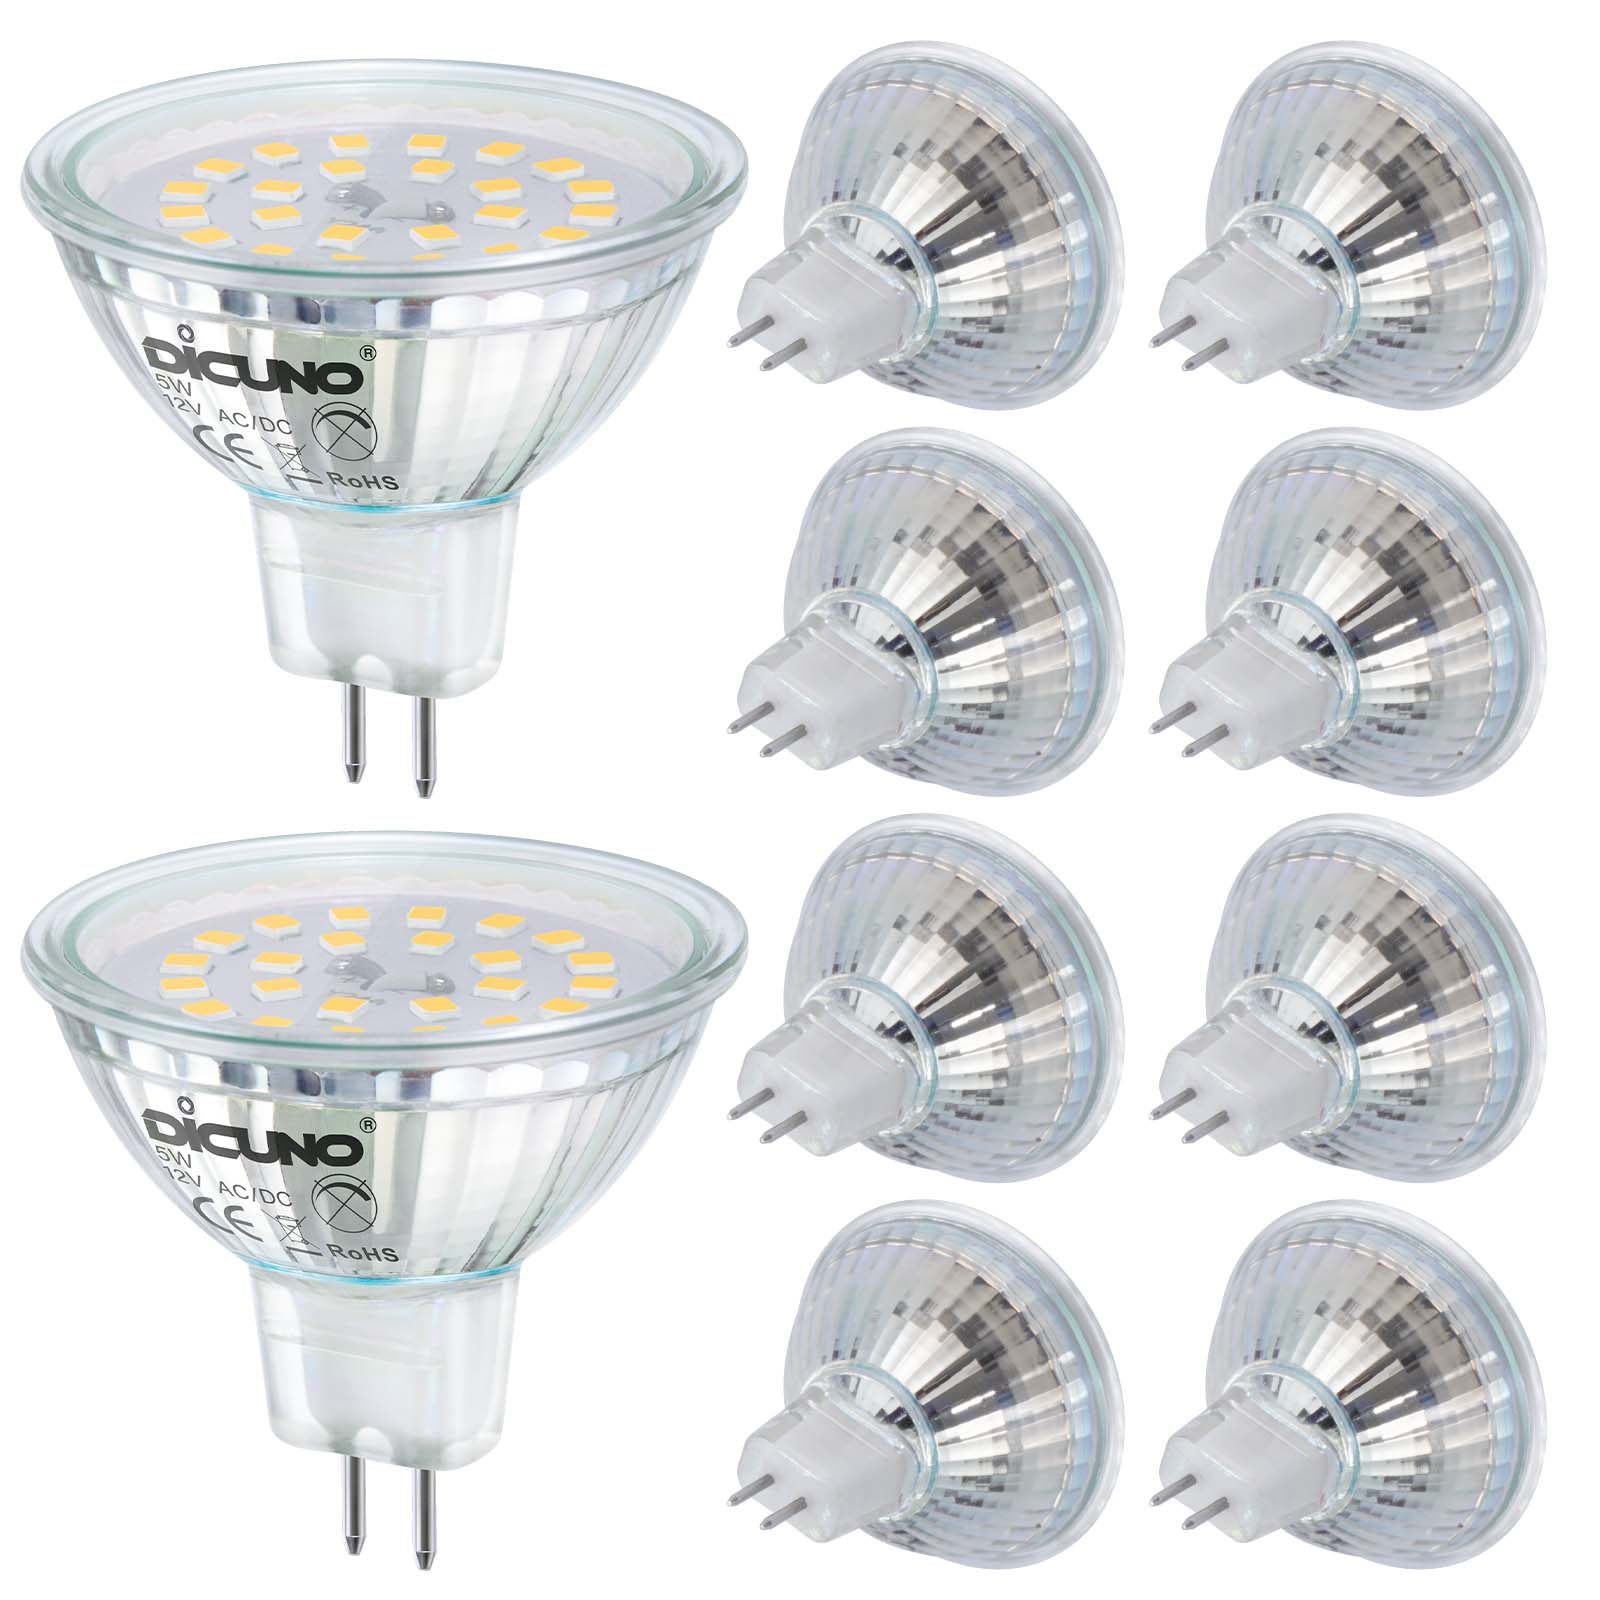 GU10/GU5.3 LED Bulbs - DiCUNO